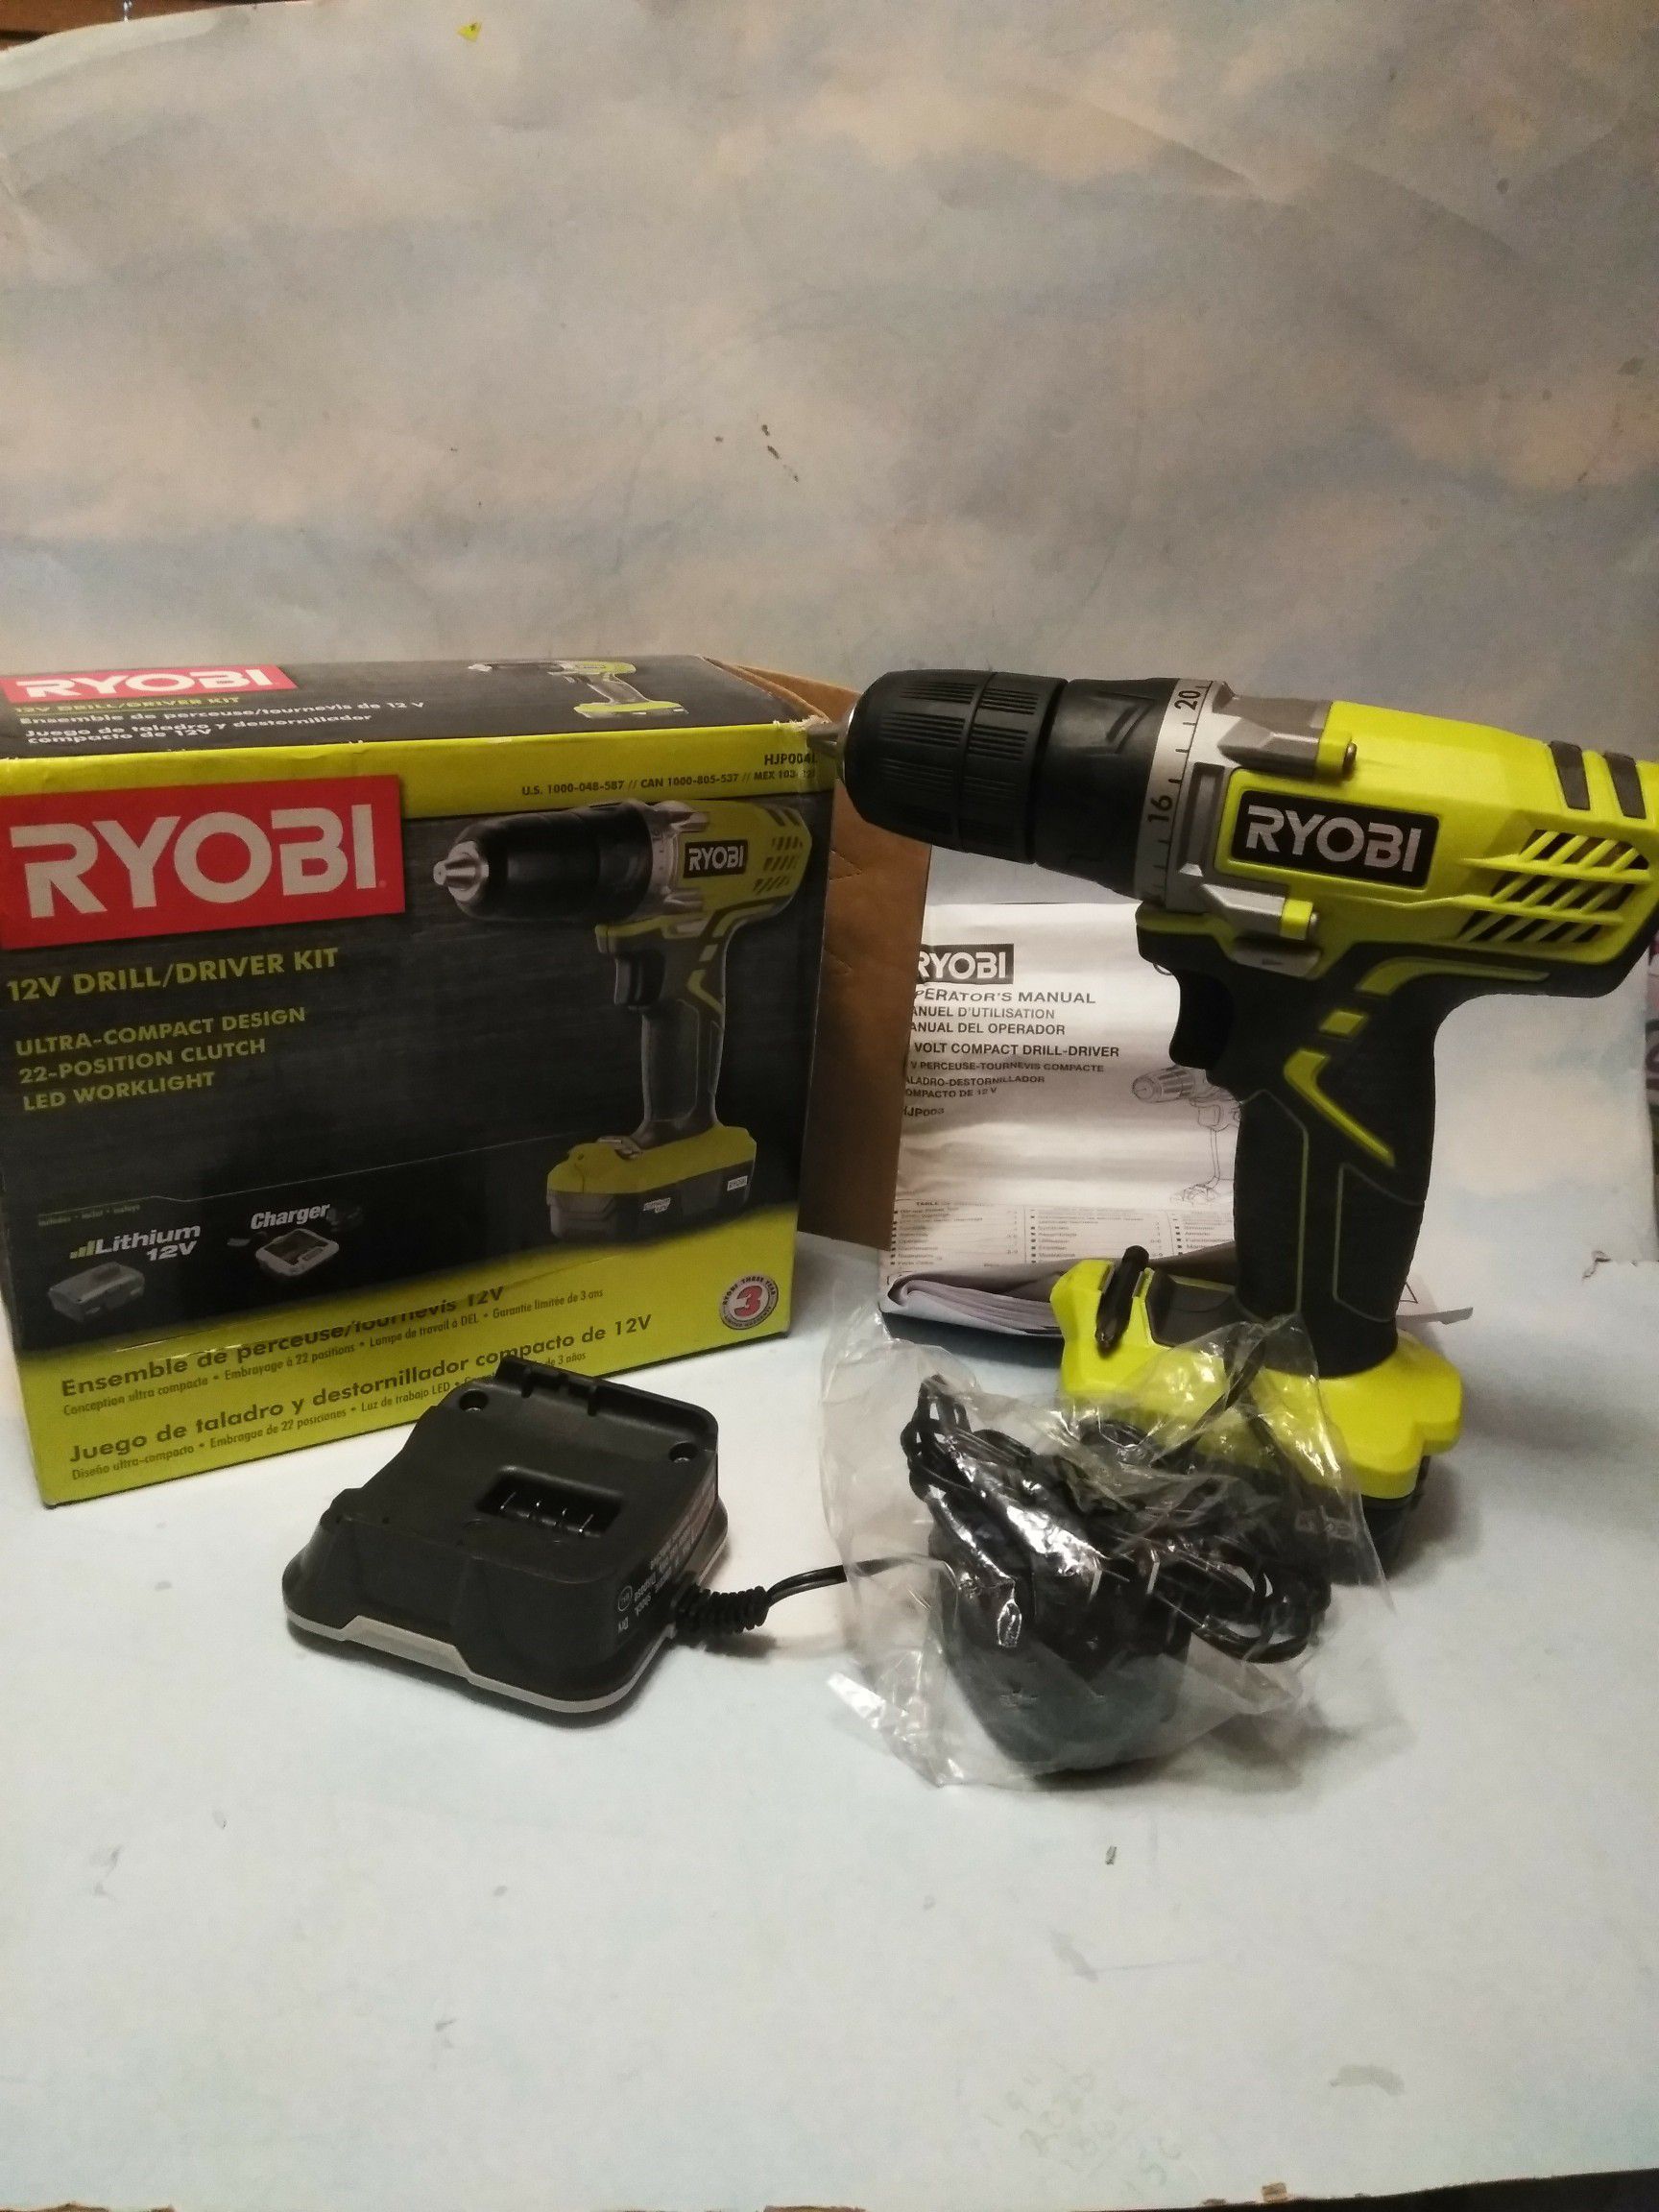 Ryobi 12 volt Drill / Driver Kit